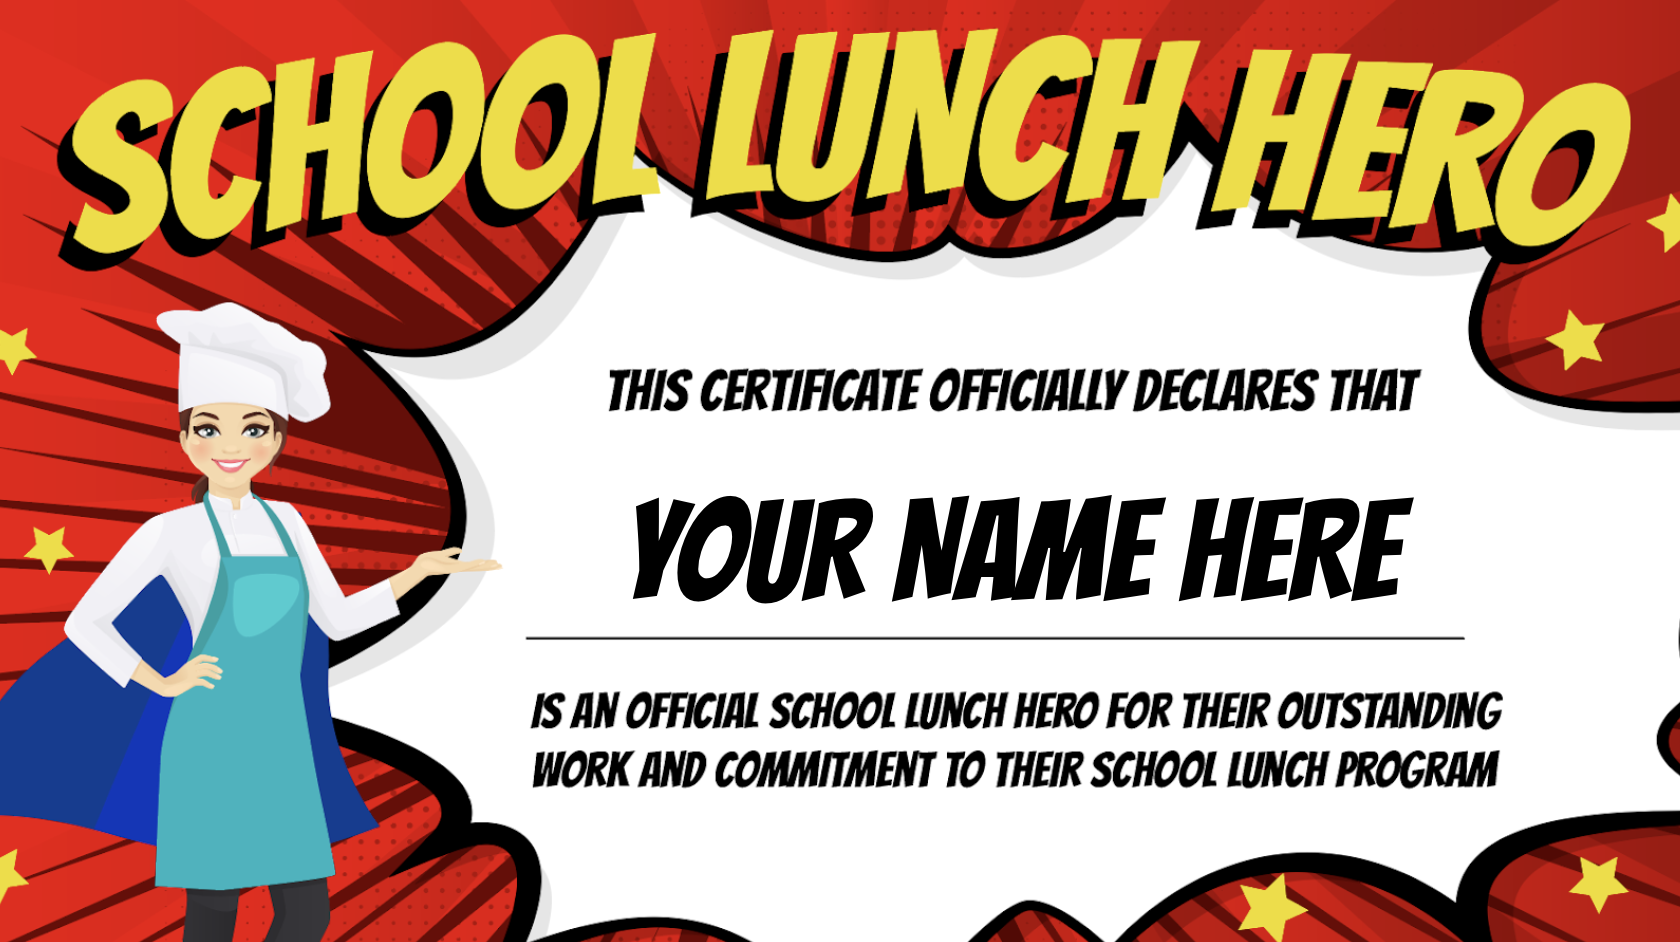 School Lunch Hero Day Health e Pro